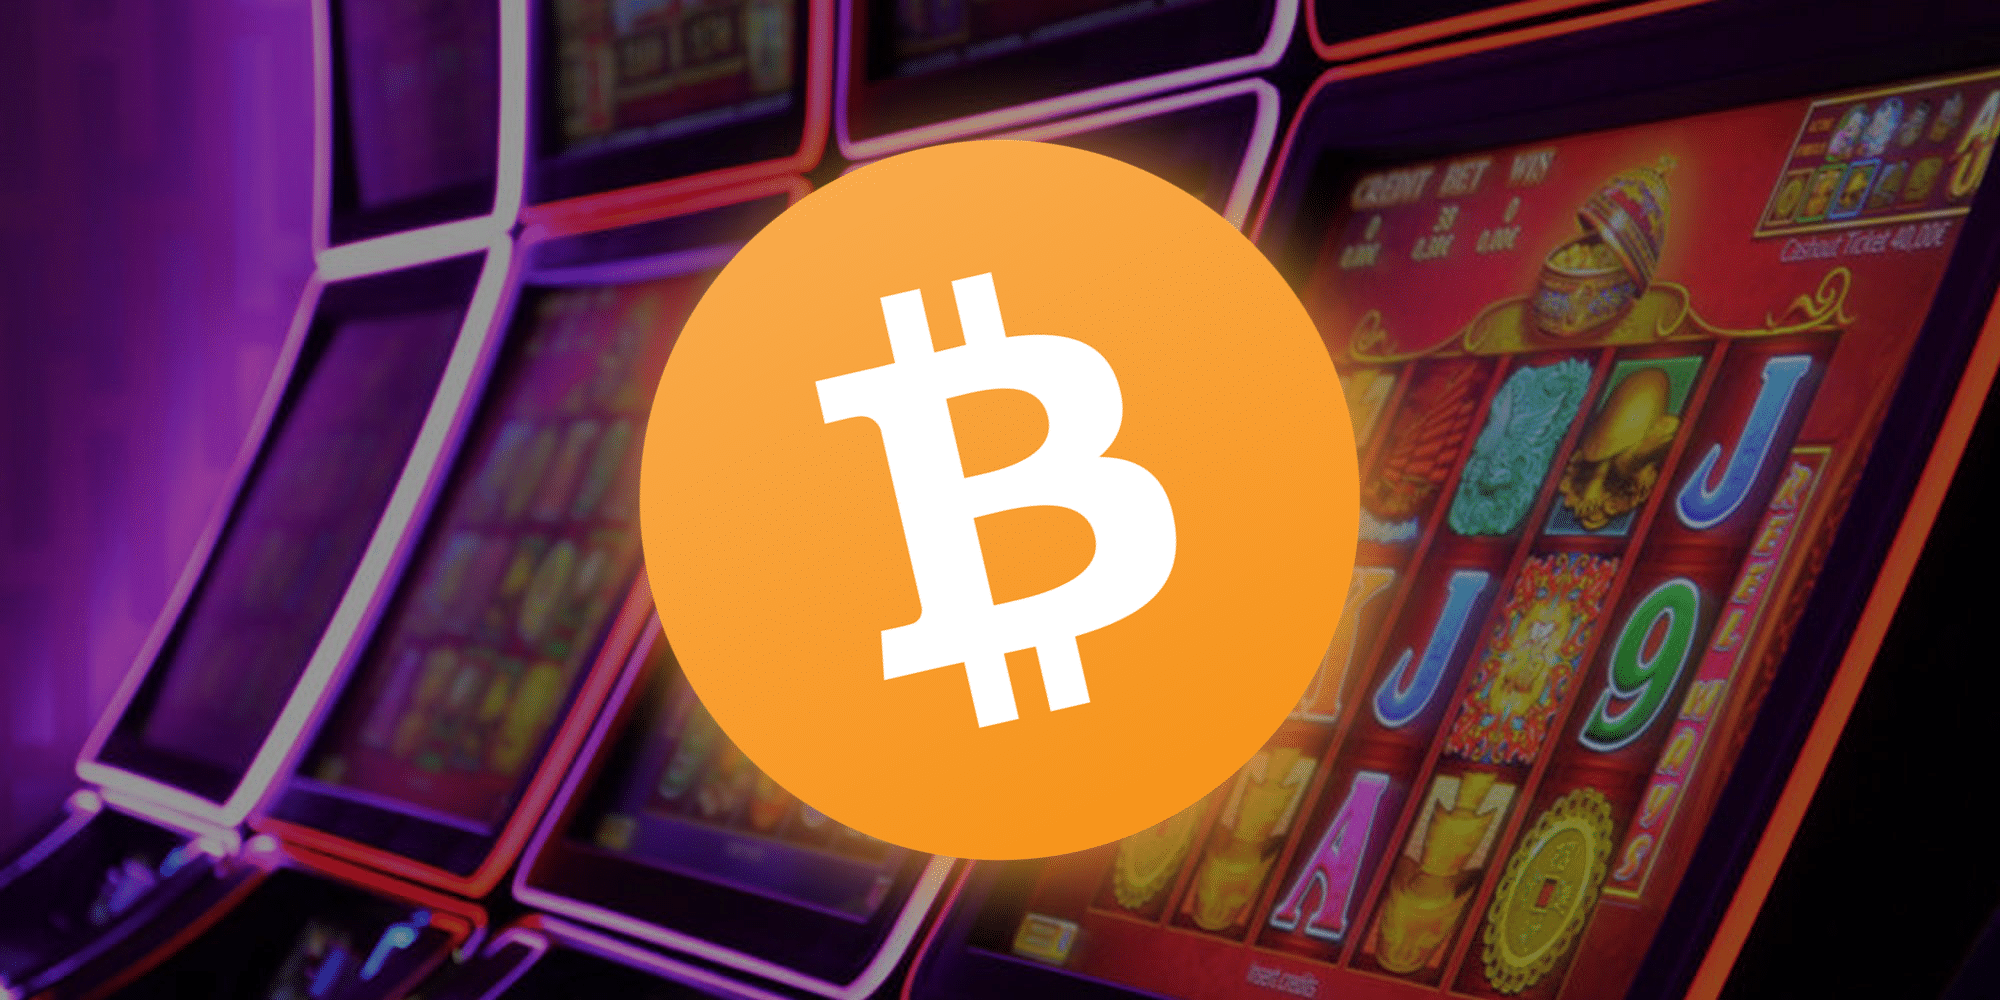 Bitcoin slotica bitcoin casino free bitcoin slots